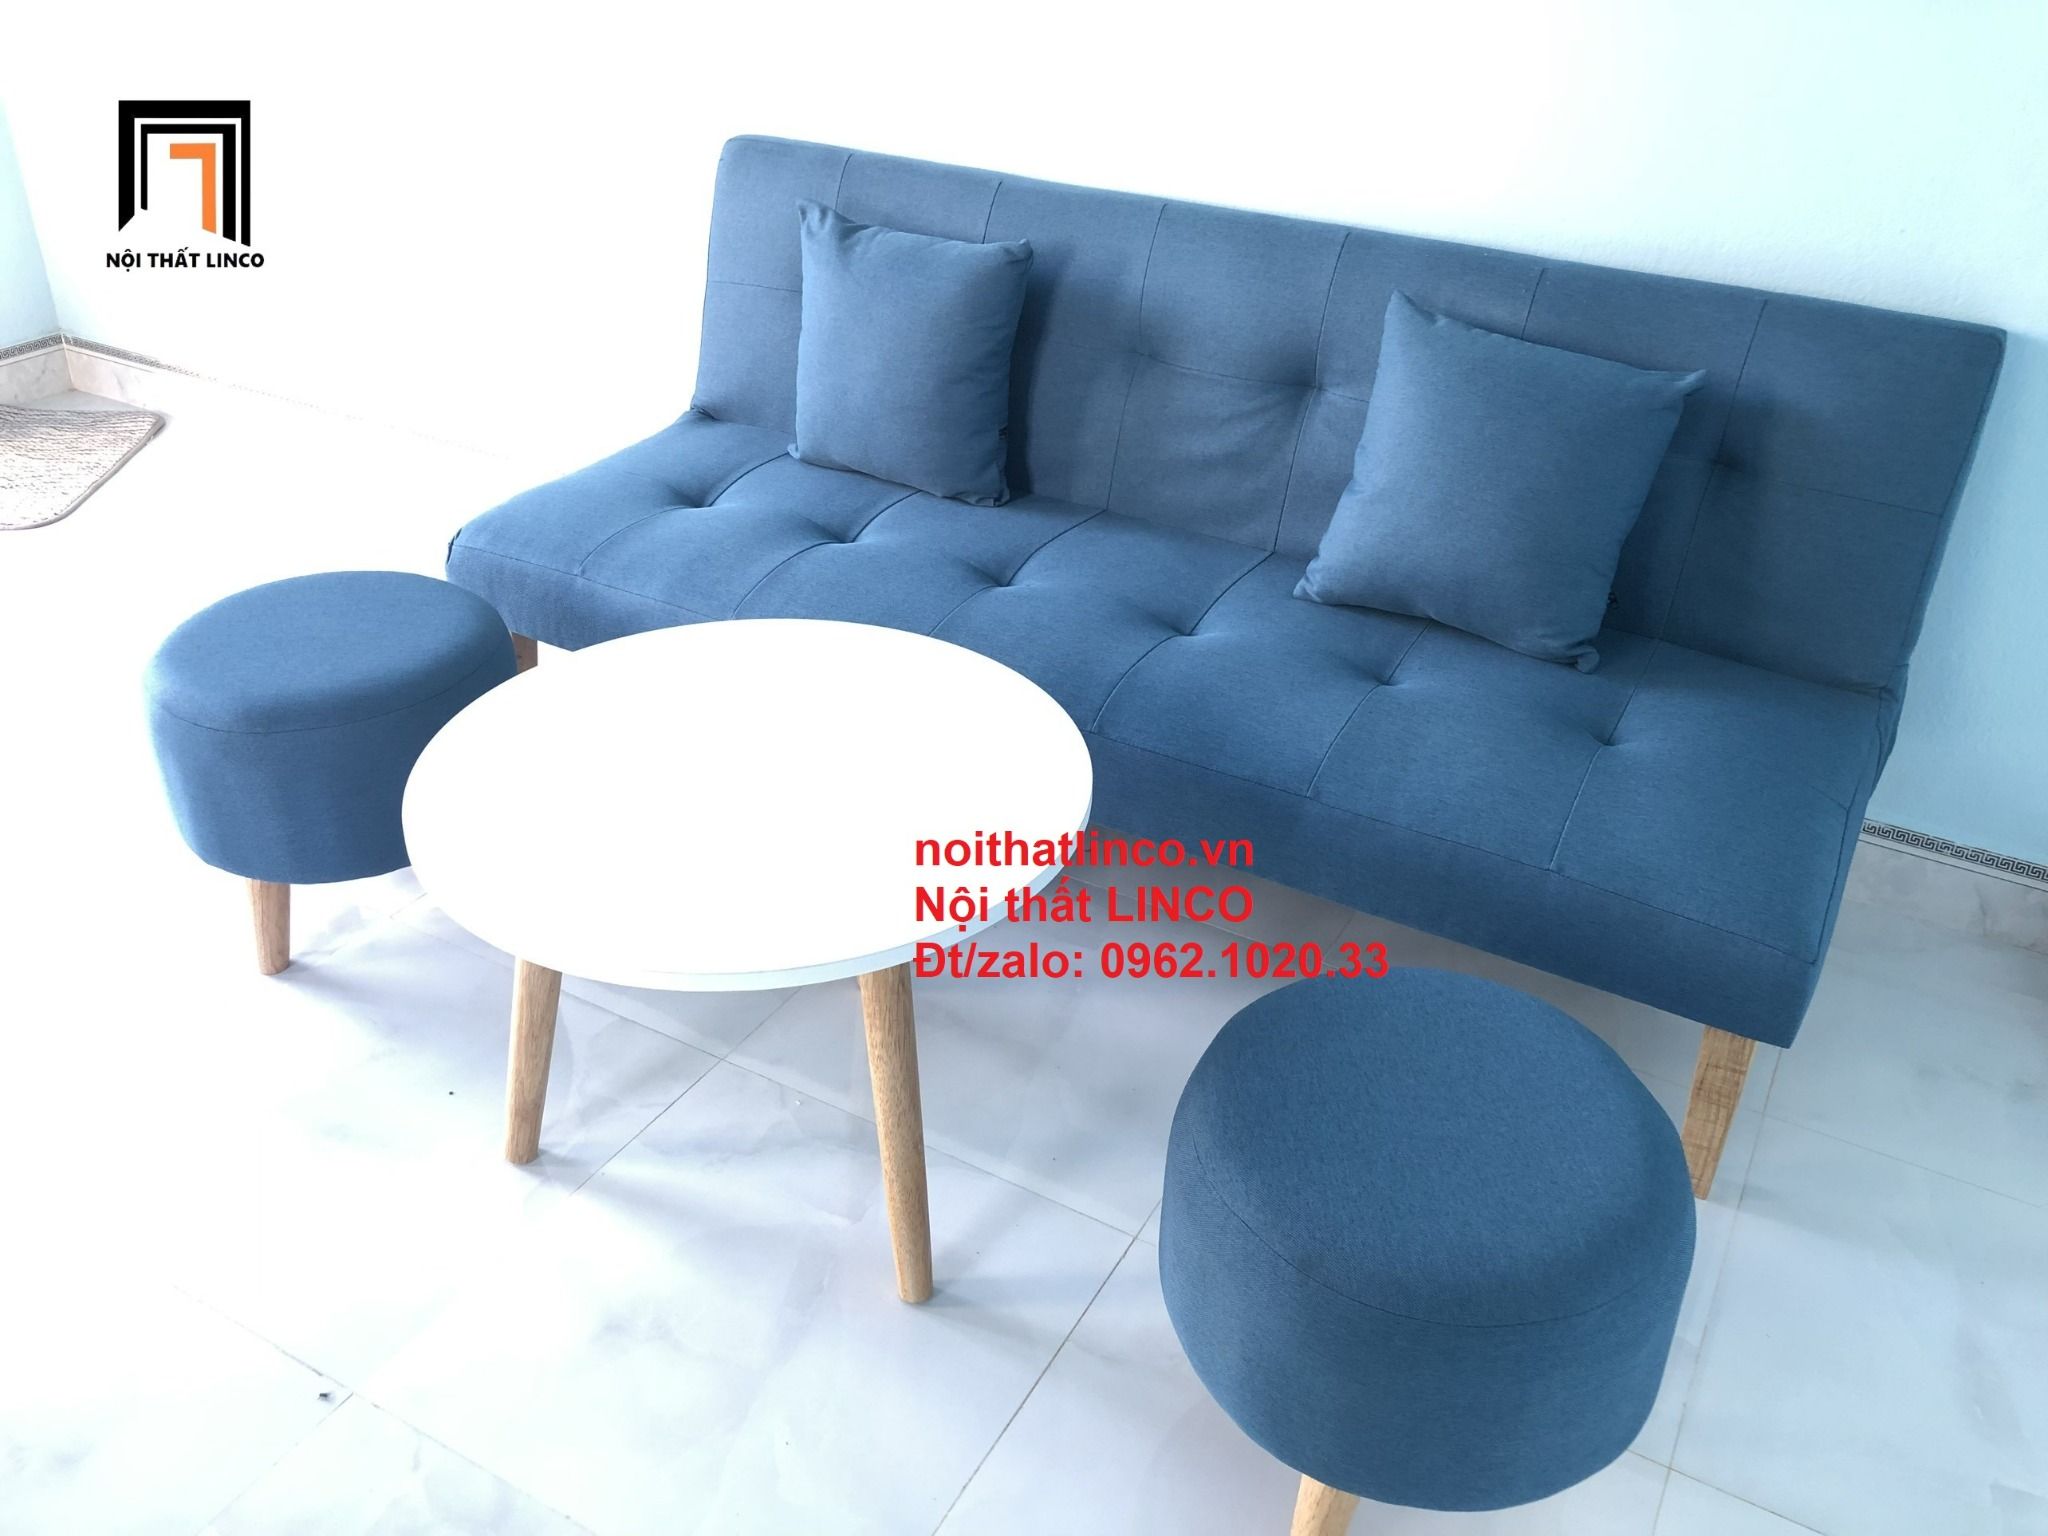  Bộ ghế sofa bed giường SFG xanh dương giá rẻ nhỏ gọn 